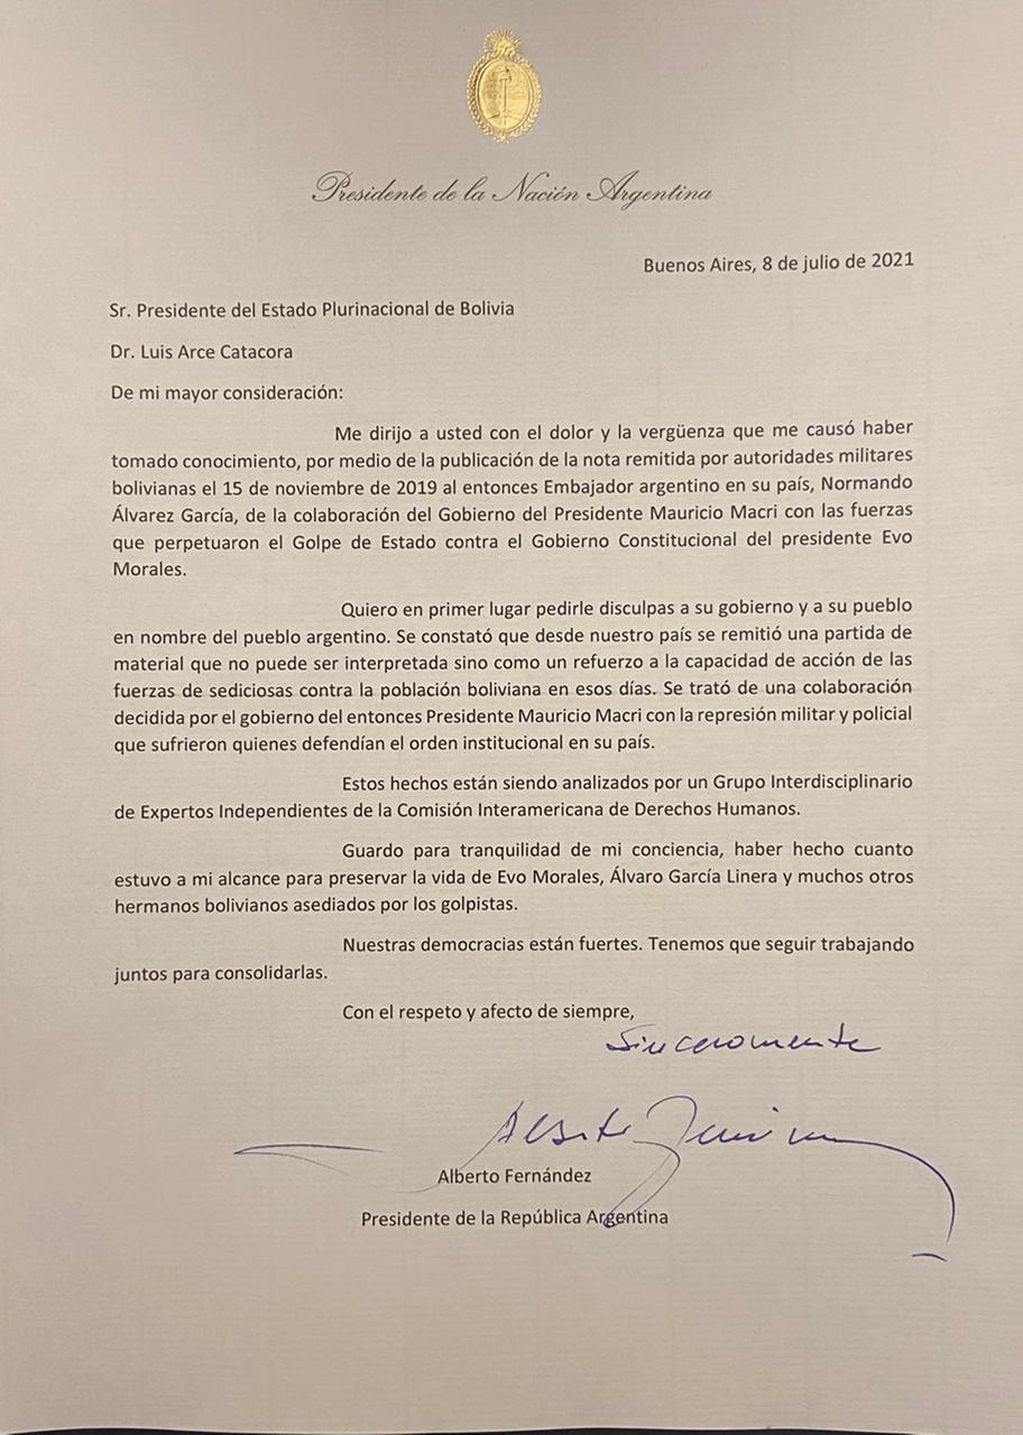 La carta de Alberto Fernández a Luis Arce.